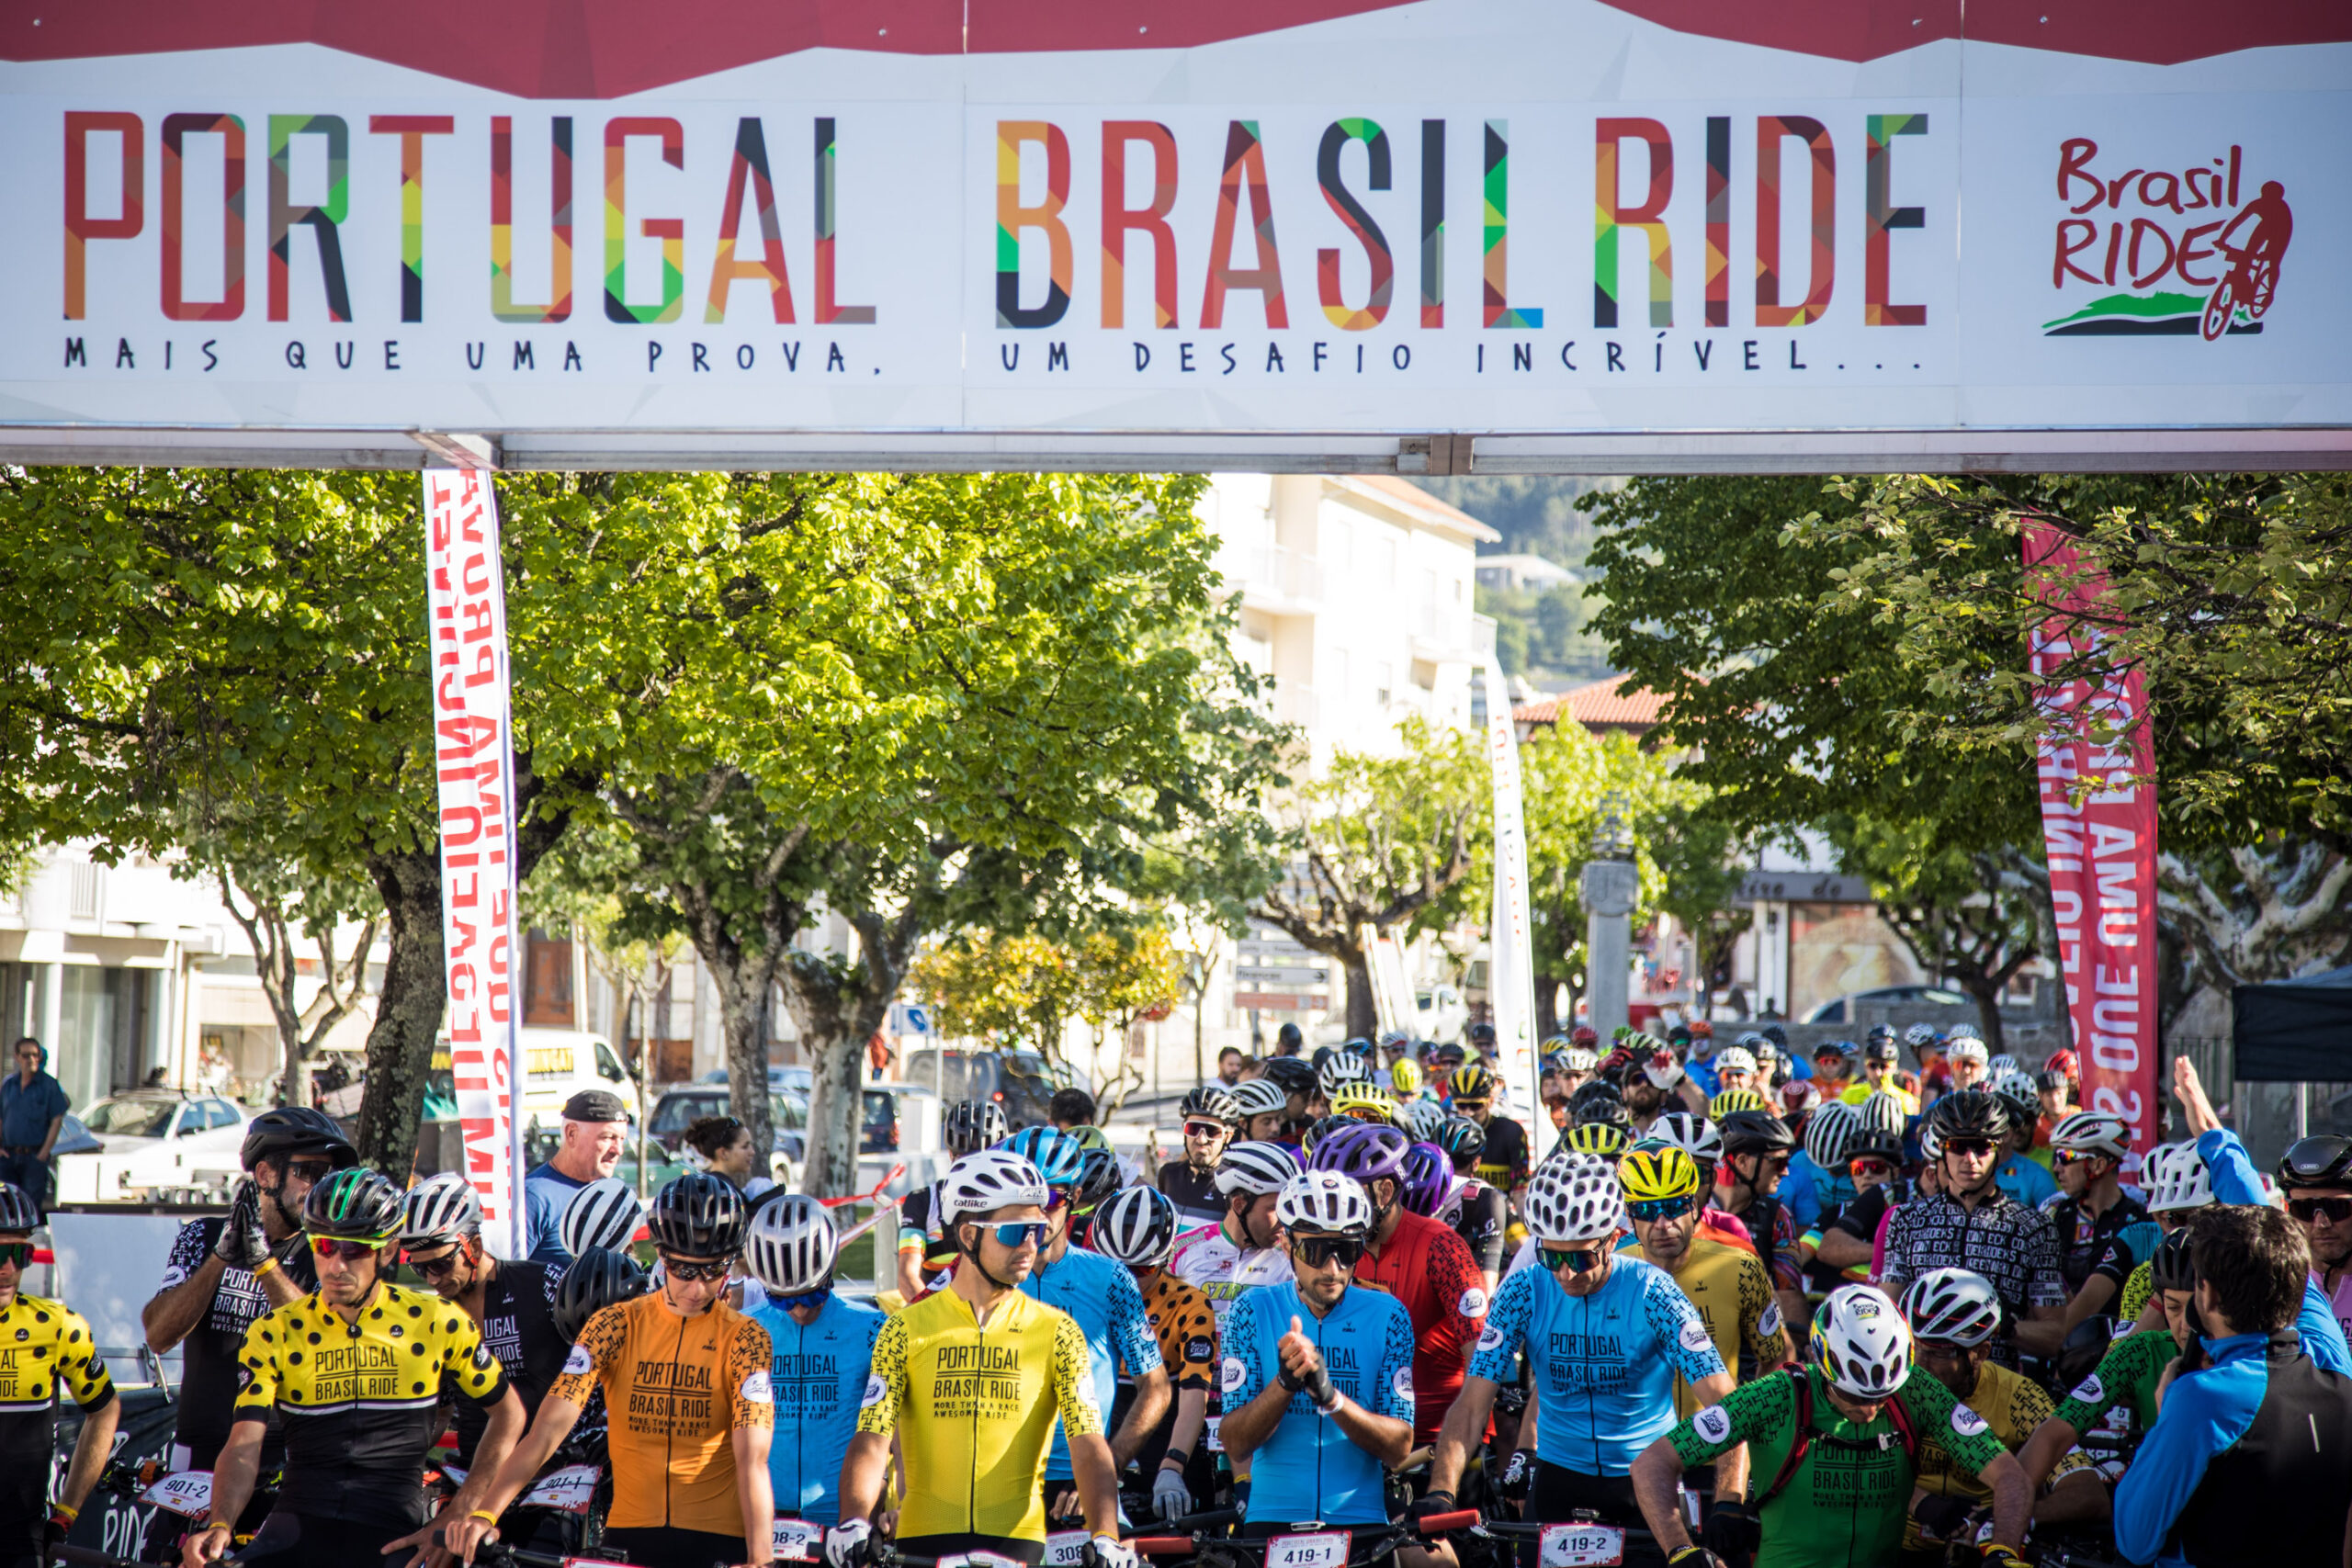 Começou a 1ª edição da Portugal Brasil Ride